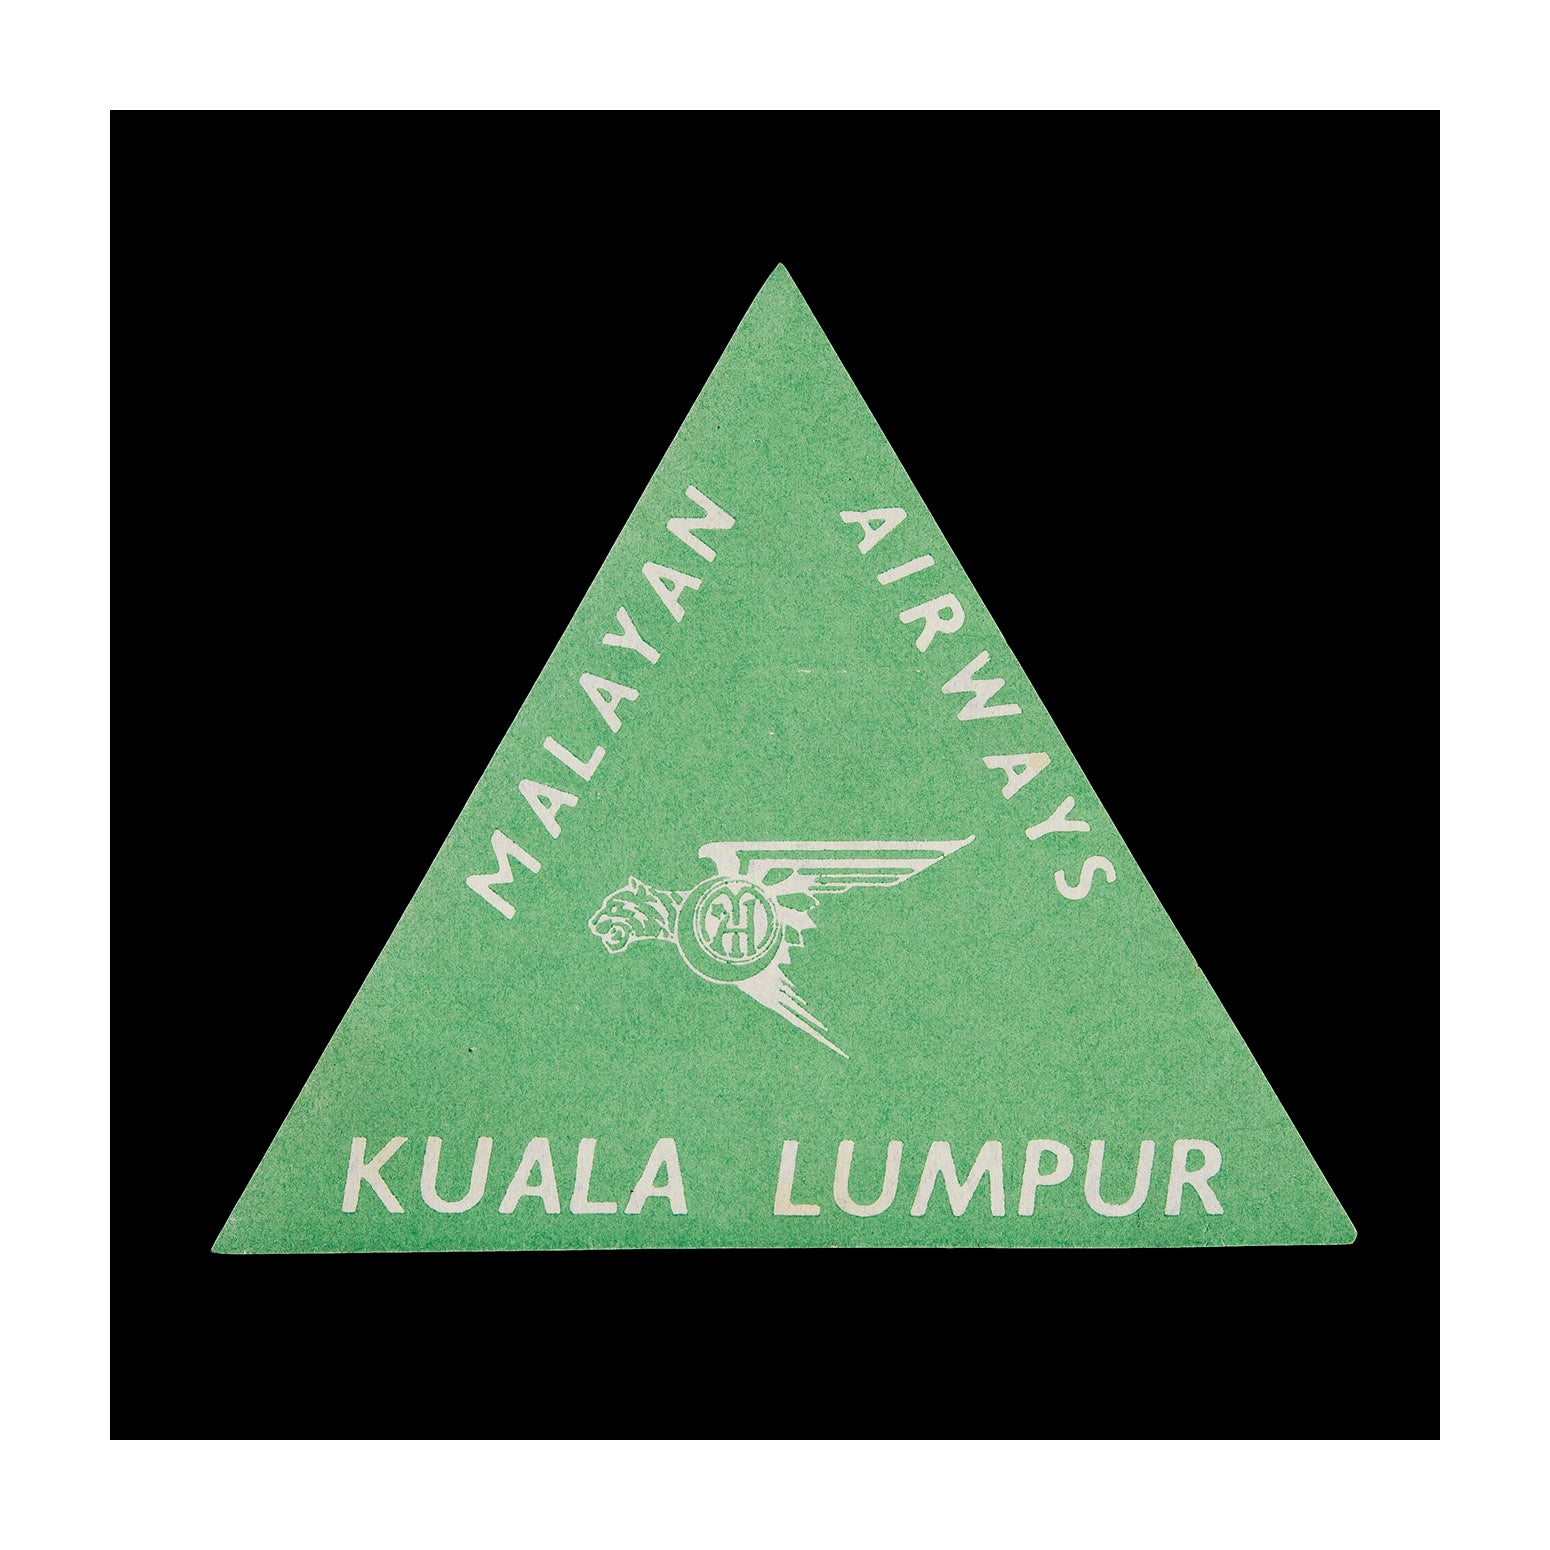 Malayan Airways, Kuala Lumpur (Luggage Label)